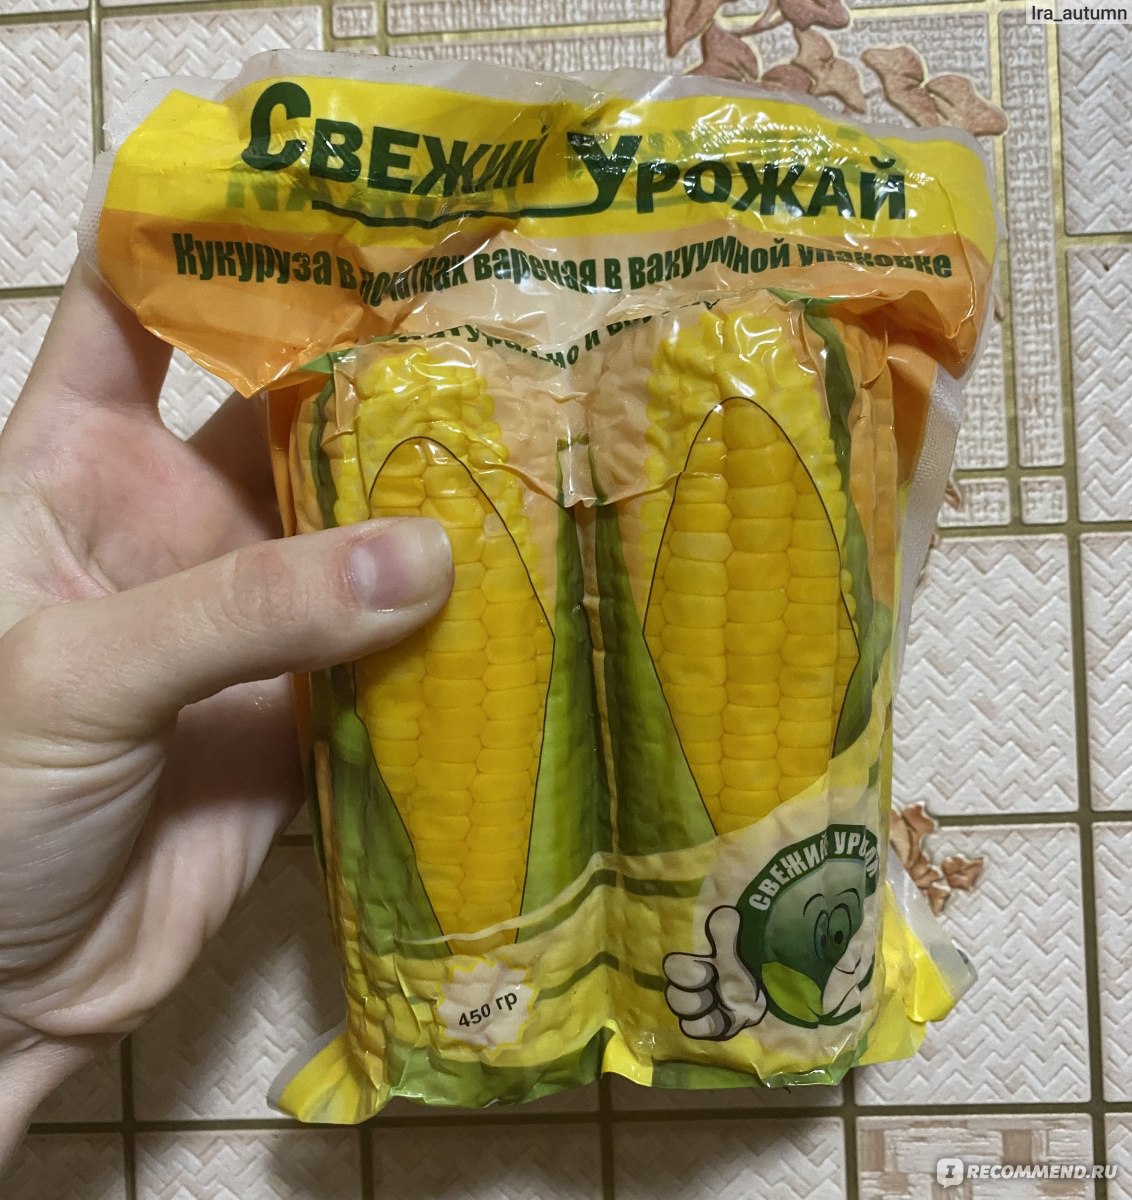 Кукуруза в початках вареная в вакуумной упаковке